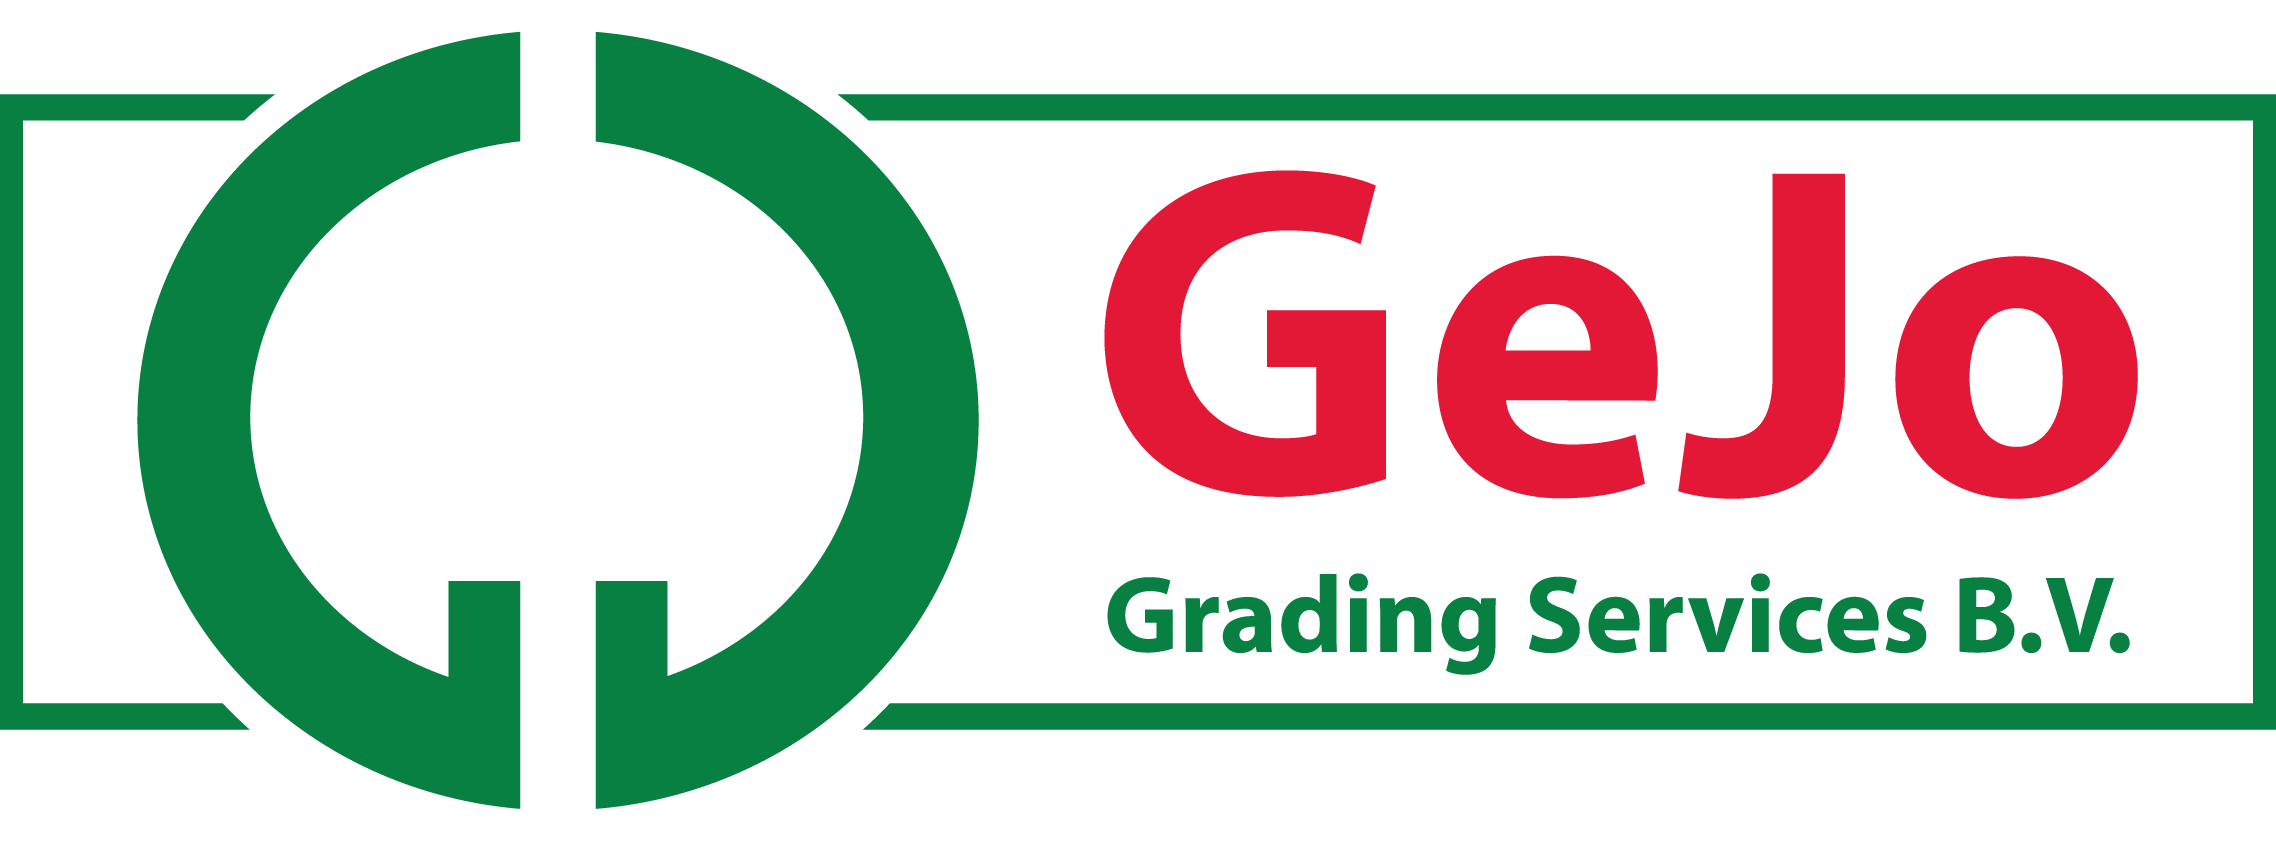 GeJo Grading